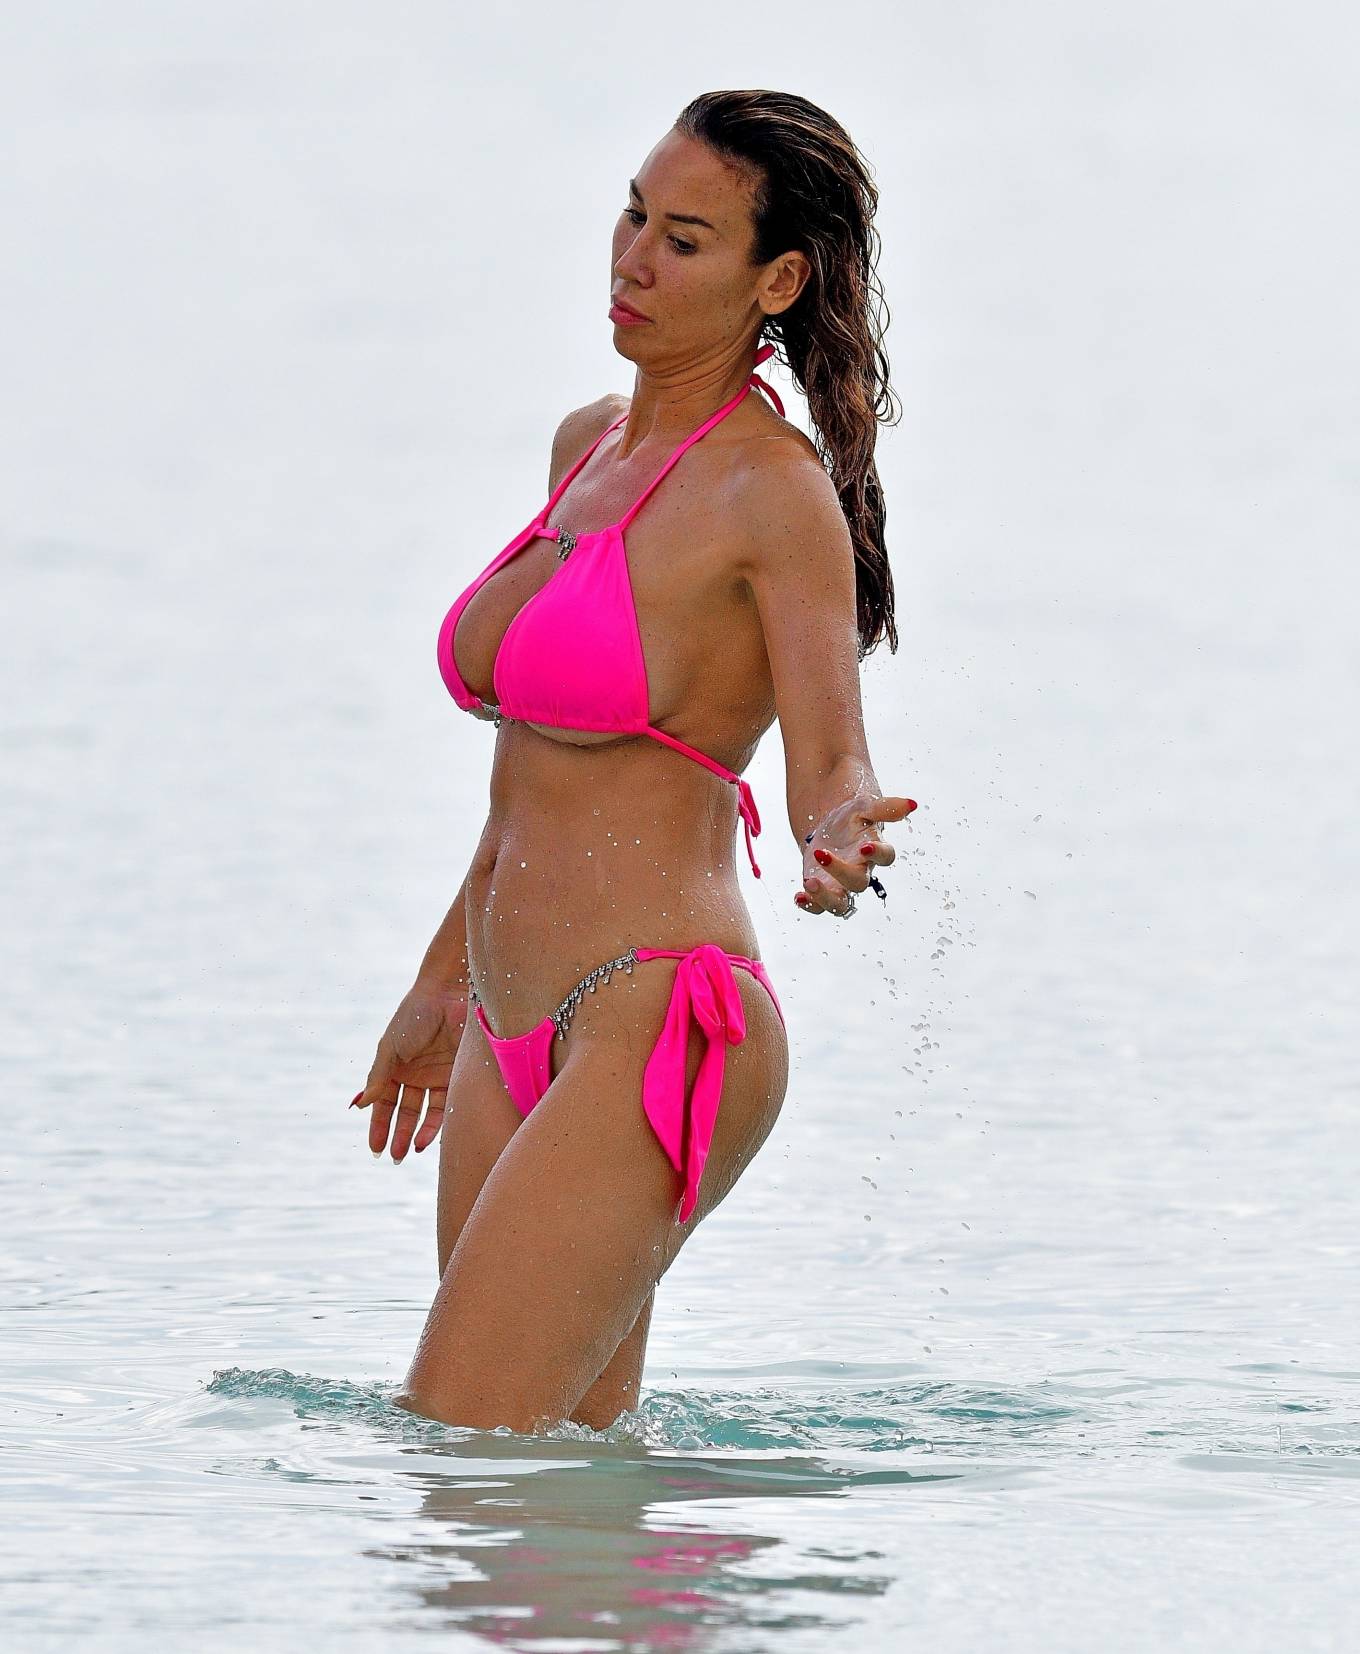 Ampika Pickston - Seen in pink bikini on the beach in Barbados